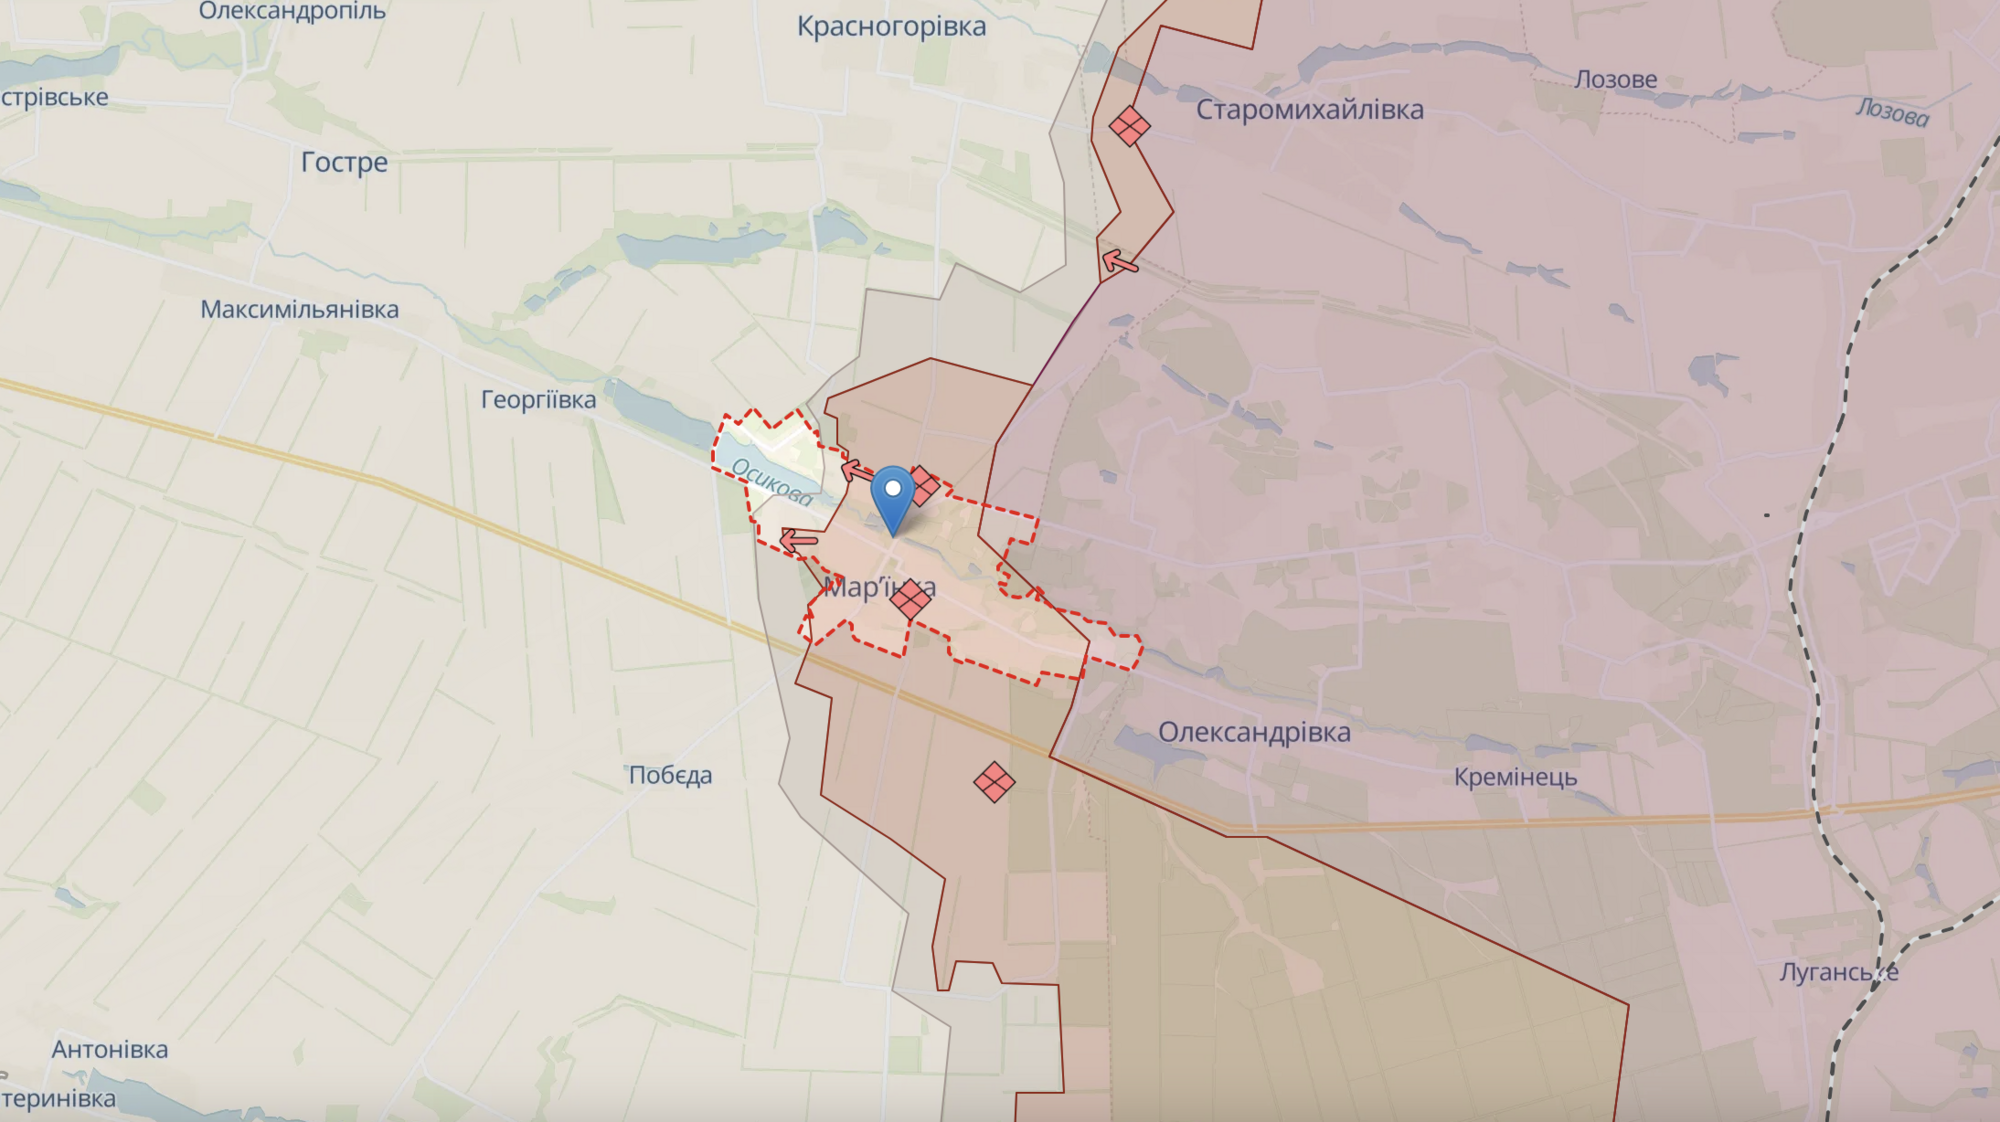 ''Odpieramy do pięćdziesięciu szturmów dziennie, wszystko jest pokryte trupami'': ukraińskie siły zbrojne informują o sytuacji w pobliżu Awdijiwki